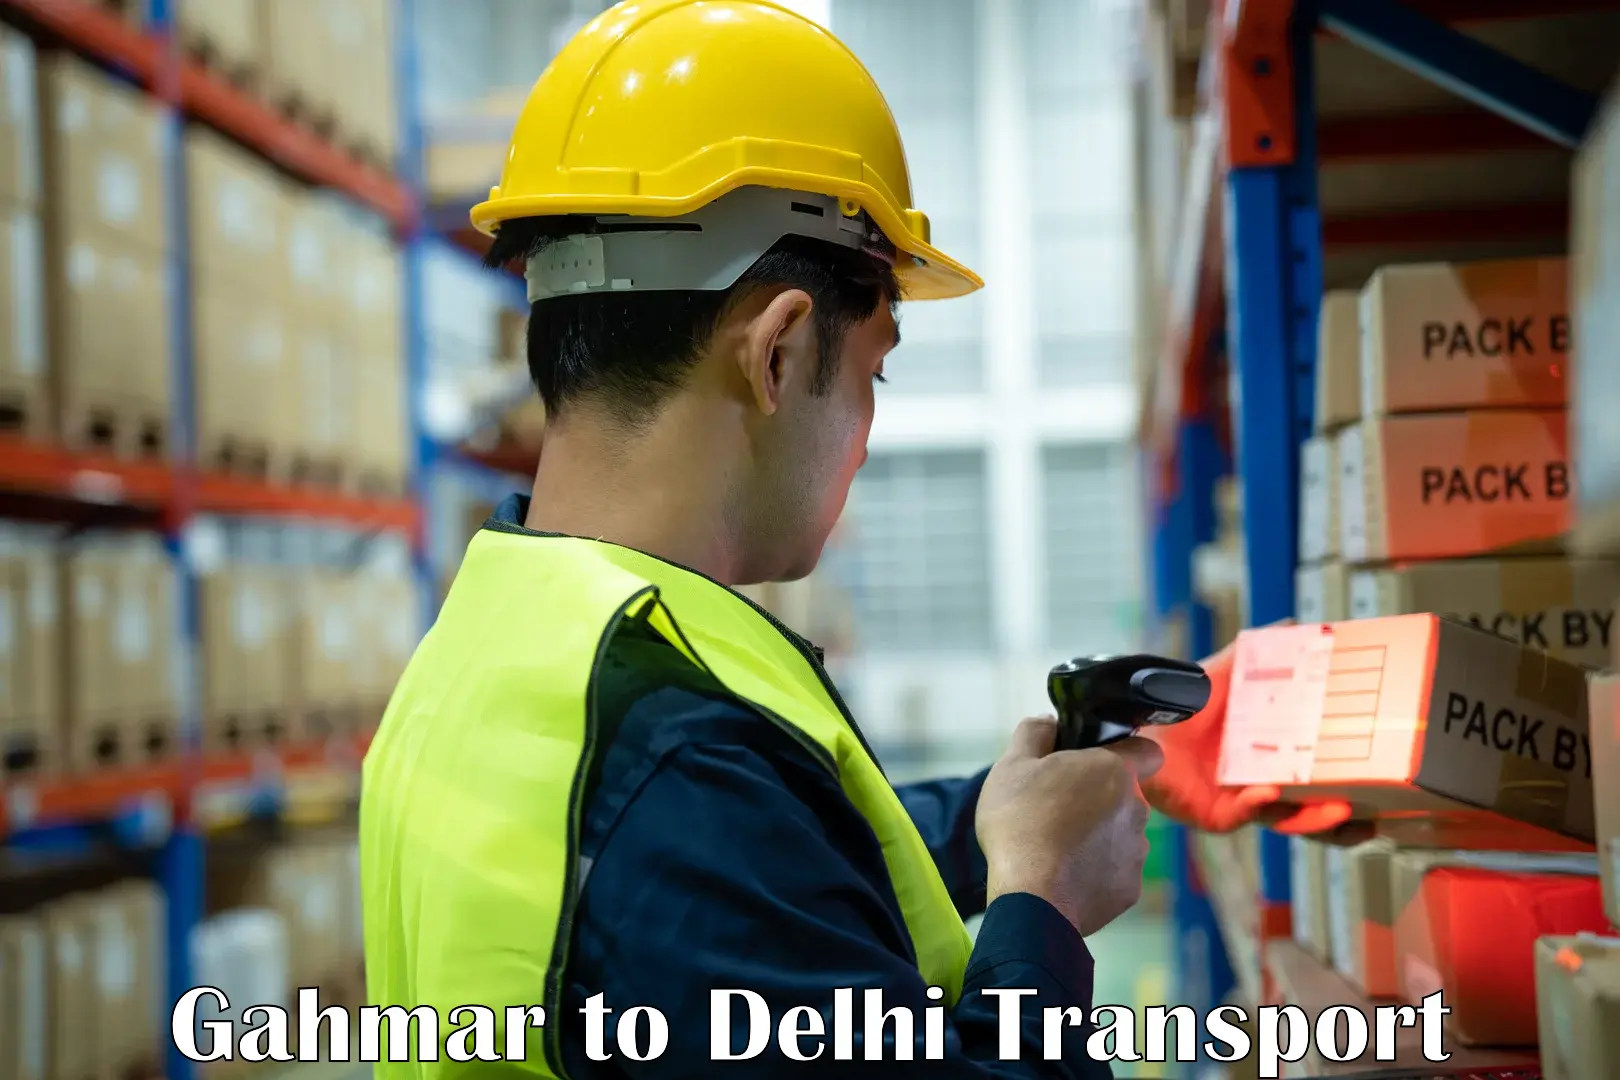 Domestic transport services Gahmar to Delhi